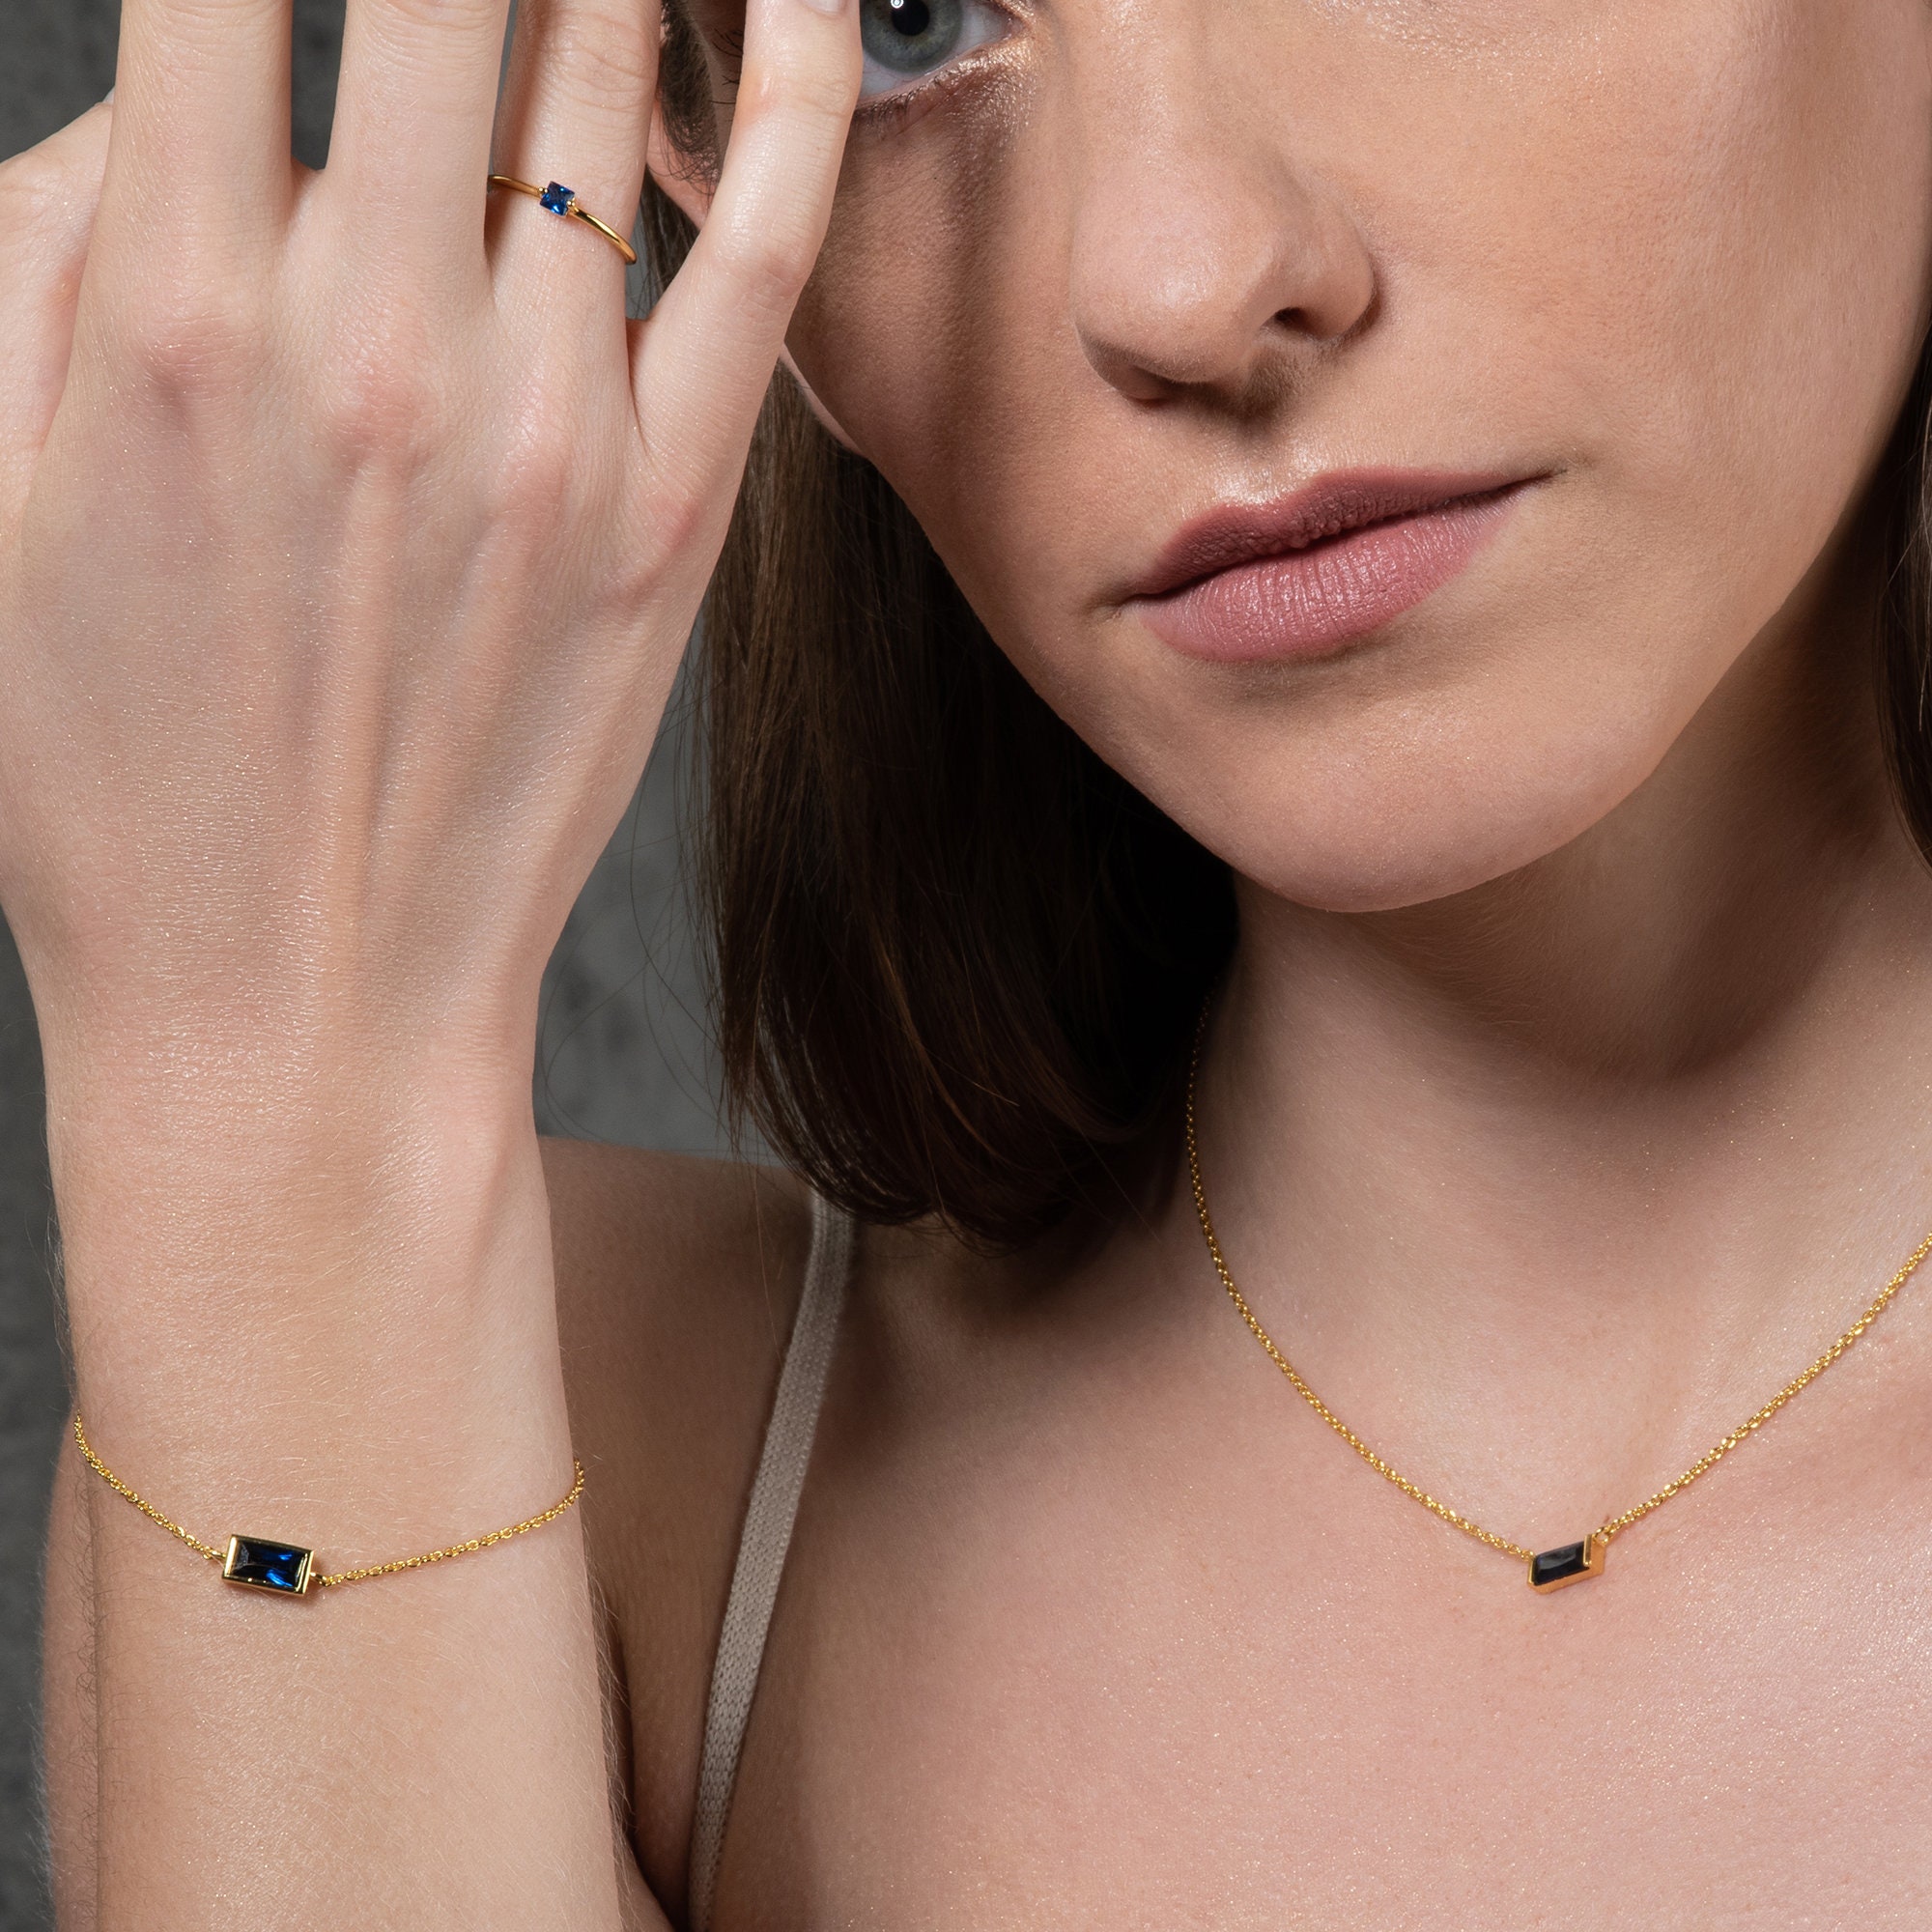 Adjustable Rose Gold Bracelet for Women and Teenage Girls, Rose Gold Bar  Bracelet With Swarovski Crystals, Bolo Bracelet for Women 